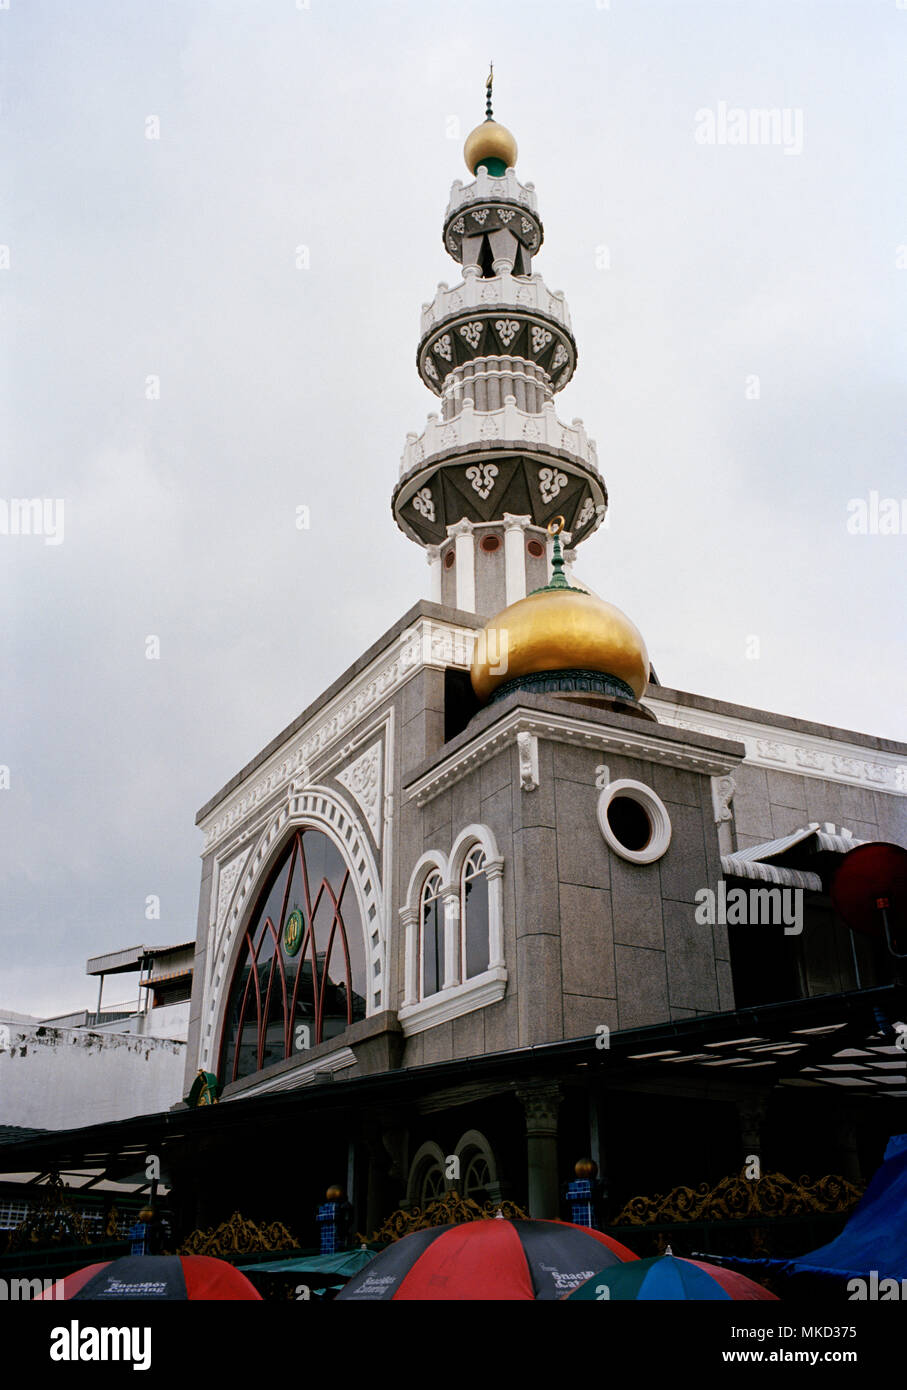 Thai - islam - Meera Moschea Suddin edificio in Silom a Bangkok nel sud-est asiatico in Estremo Oriente. Architettura islamica musulmana Travel Foto Stock